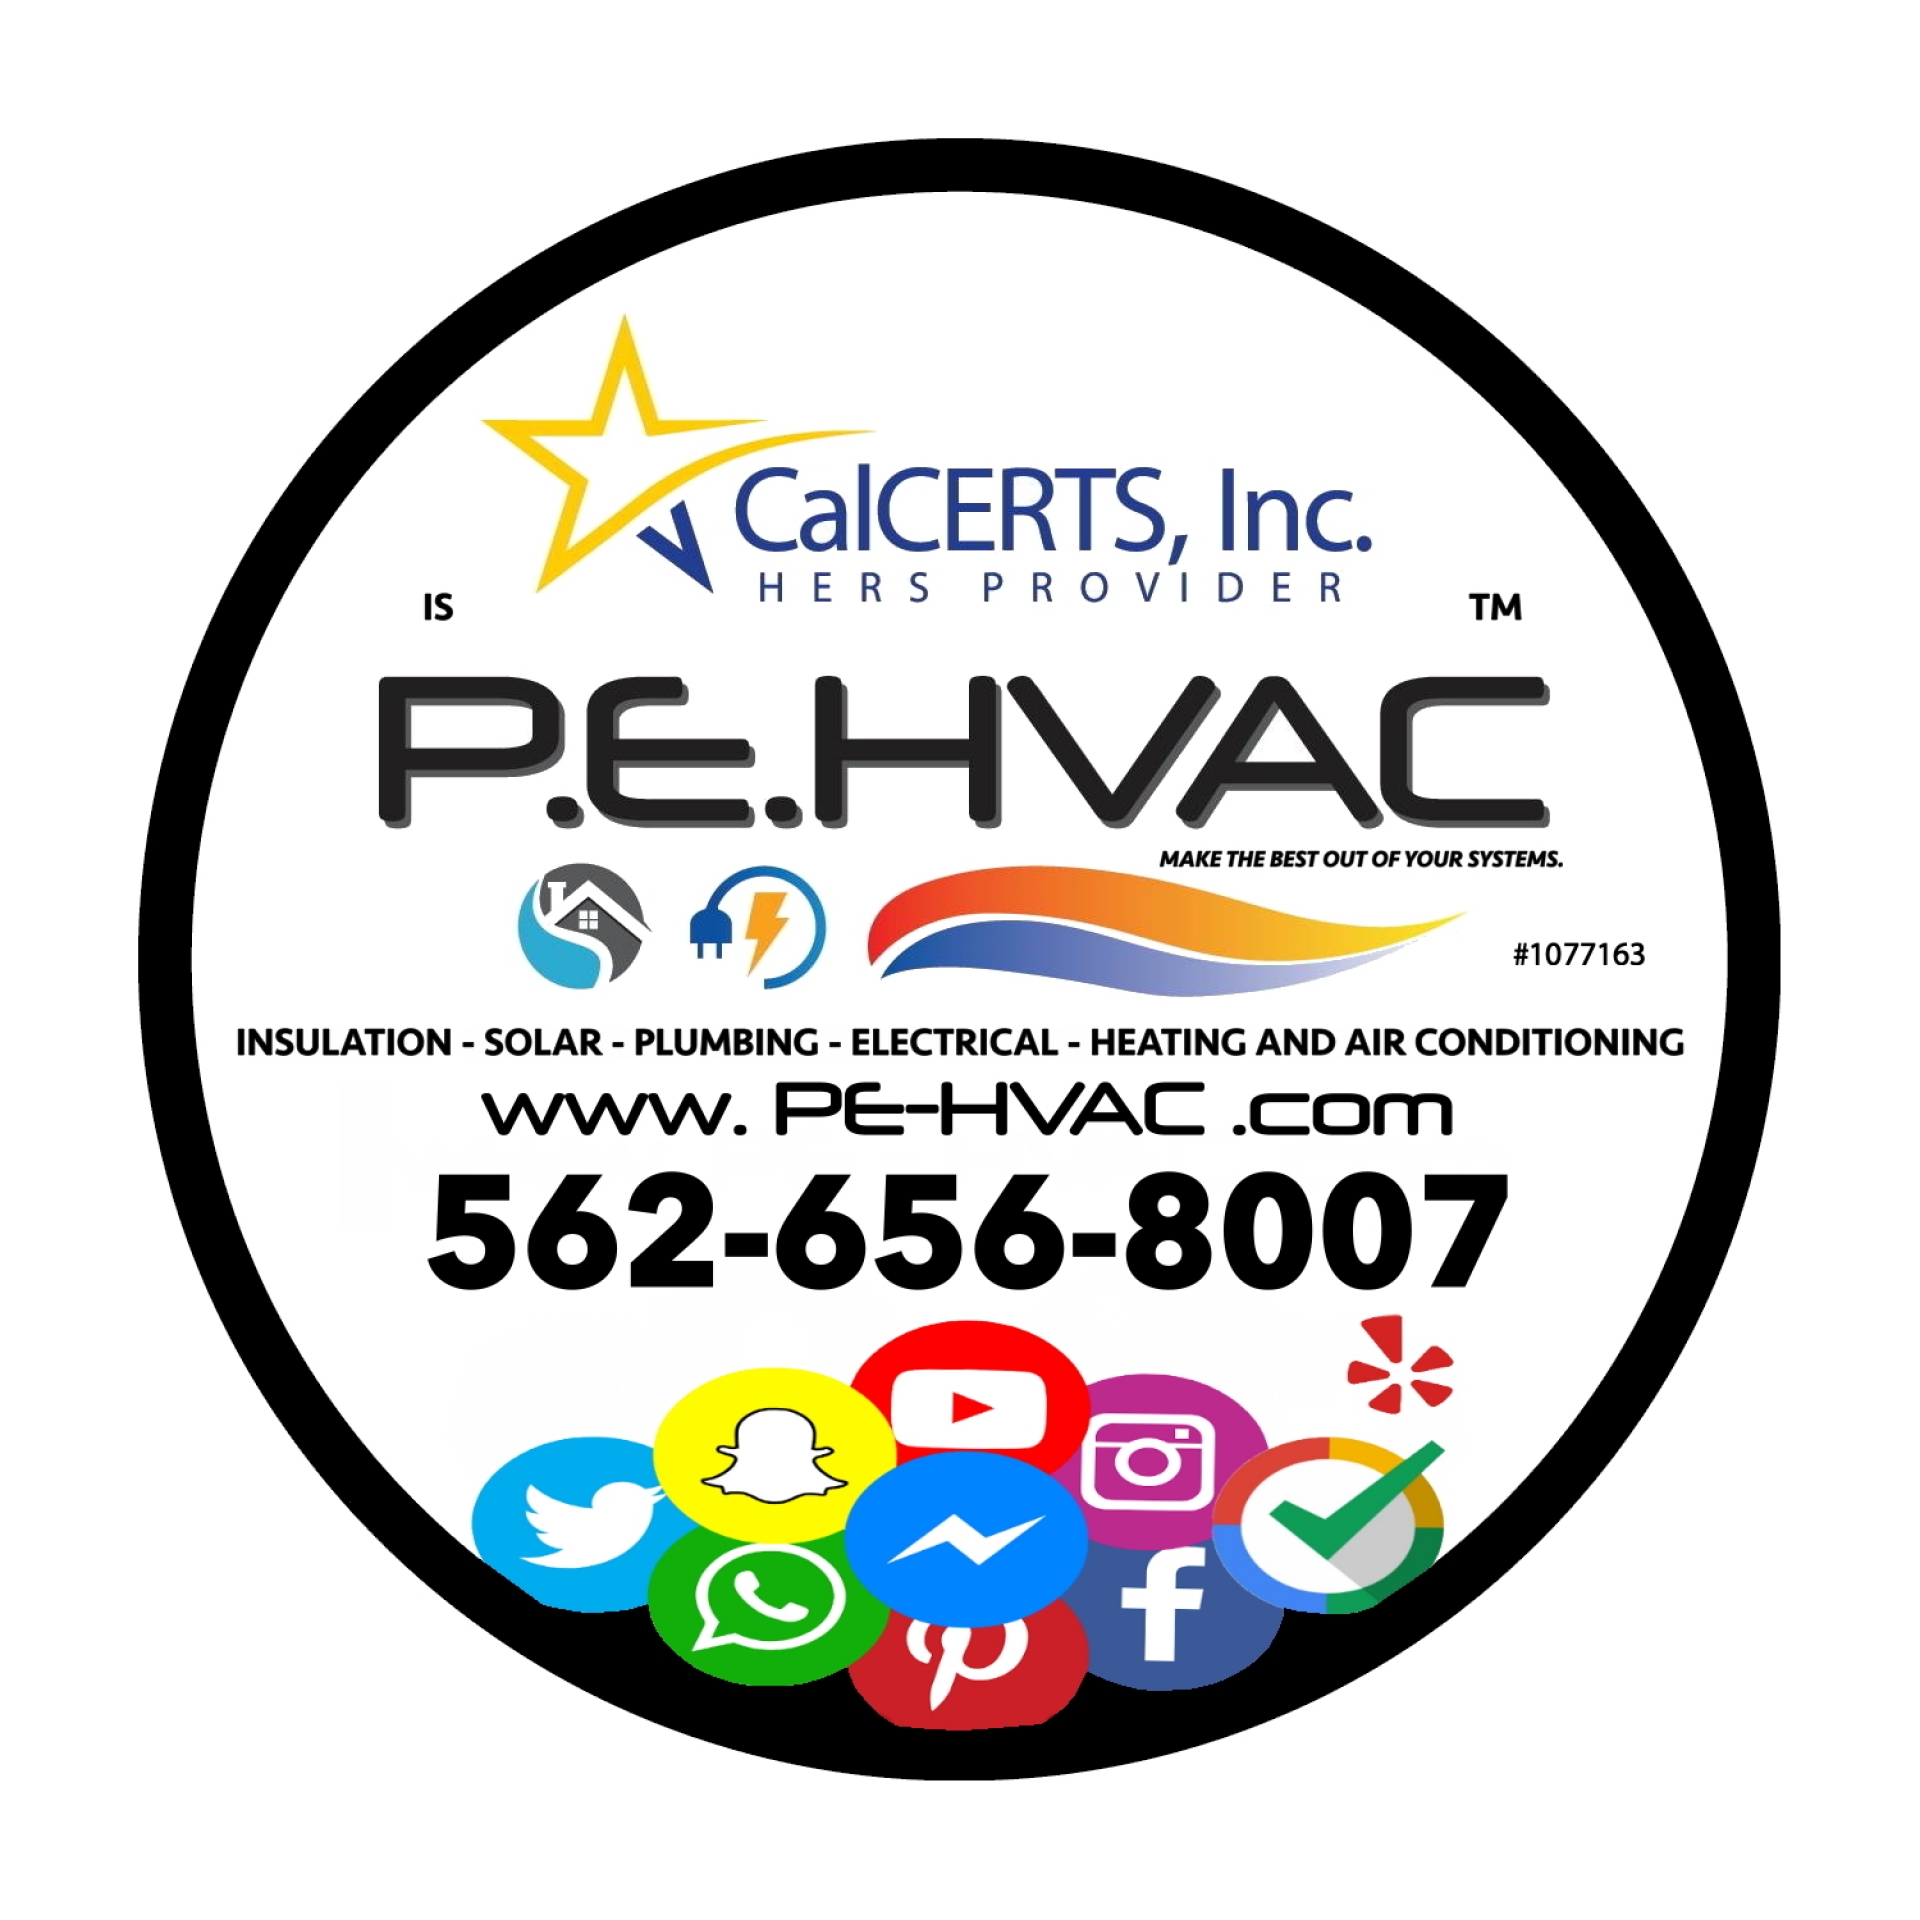 PEHVAC compay logo